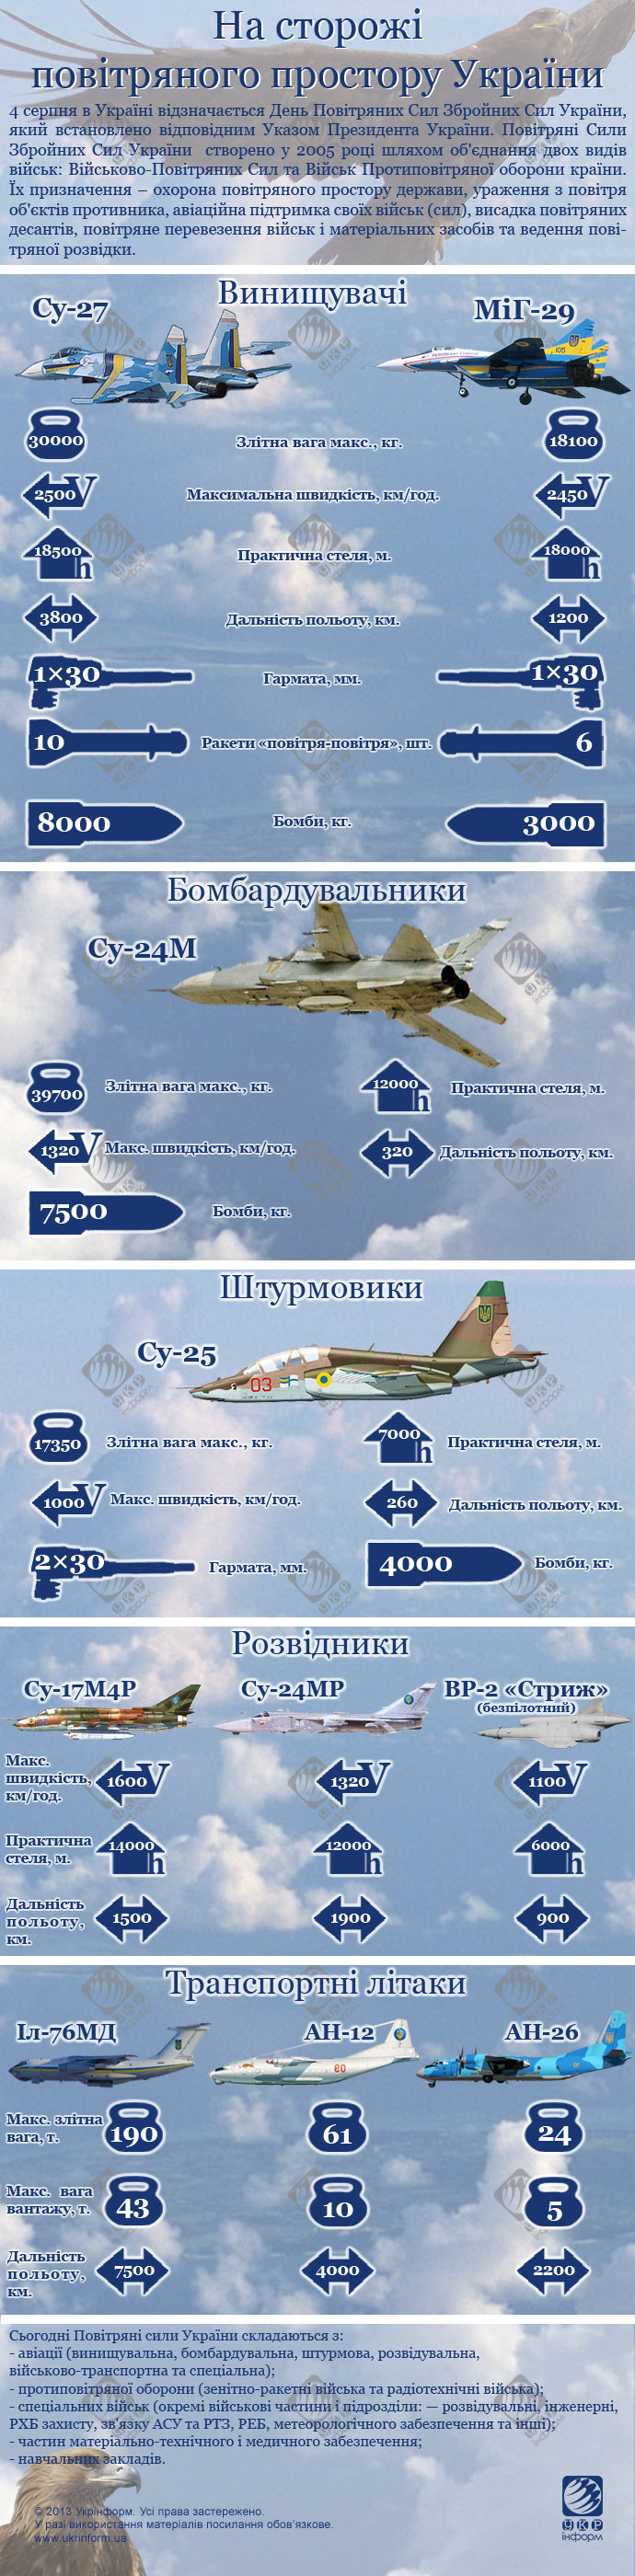 Українське небо - під надійним захистом Повітряних Сил. Інфографіка